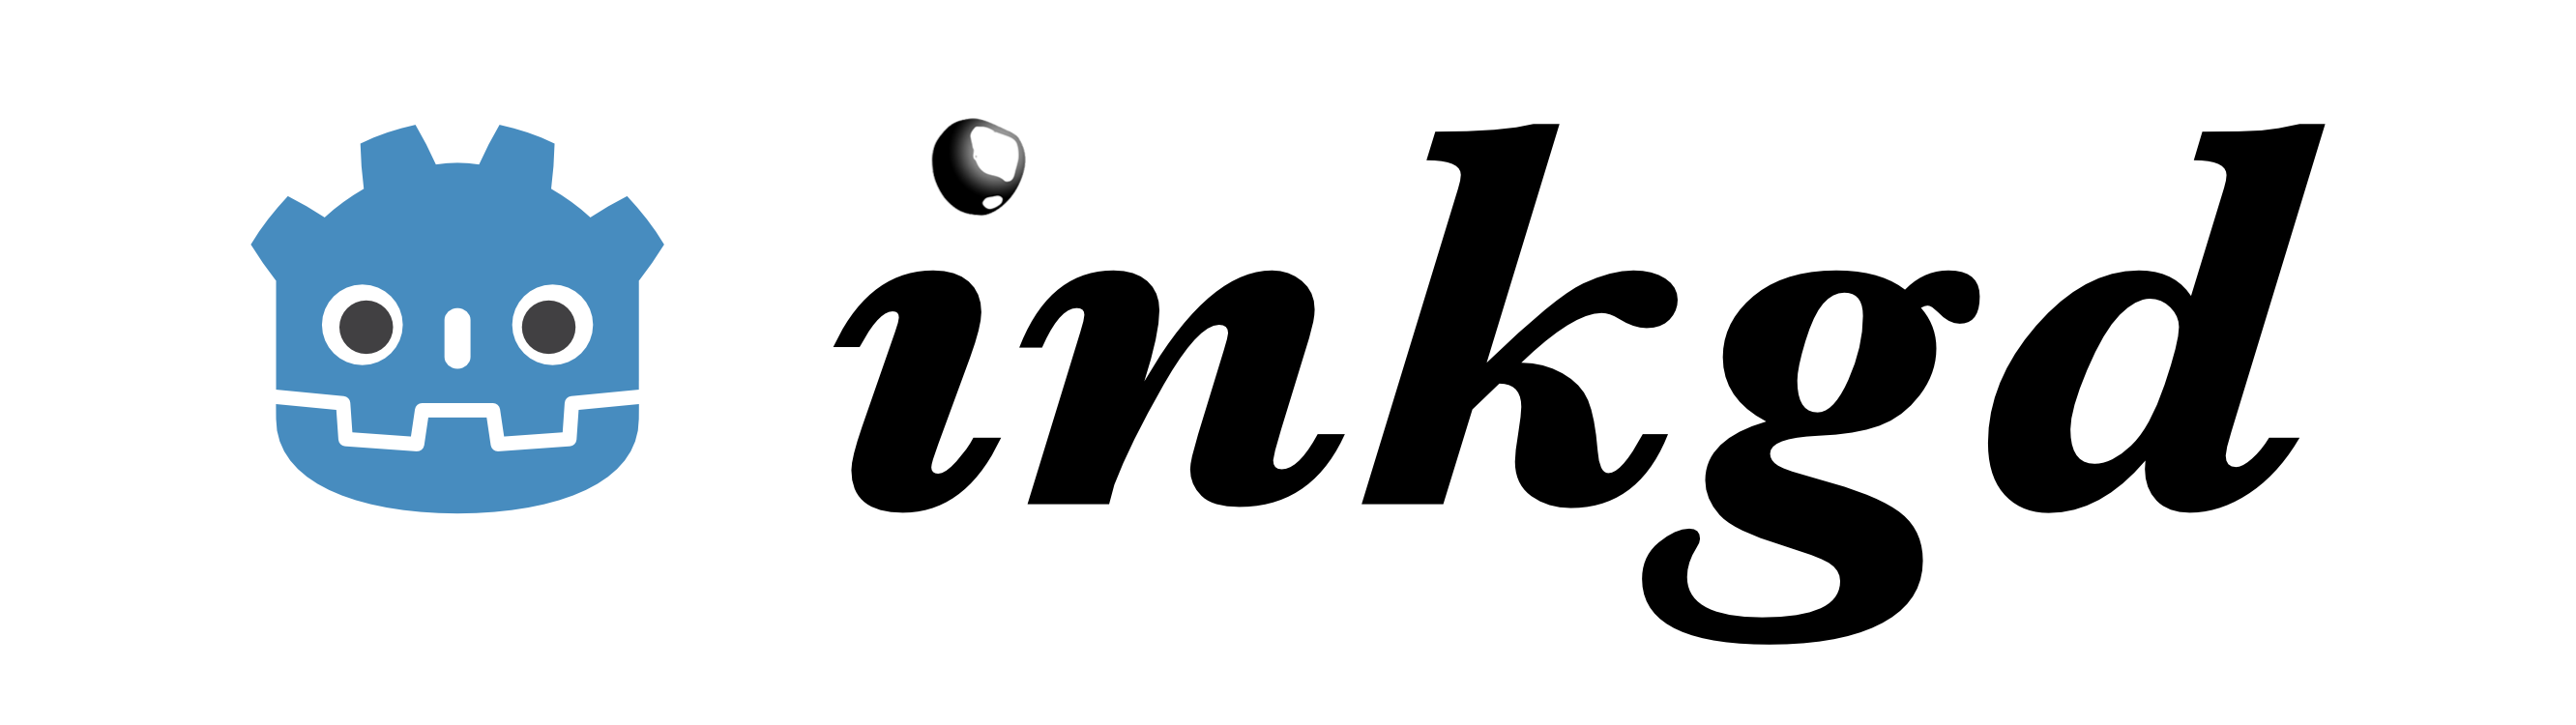 inkgd logo